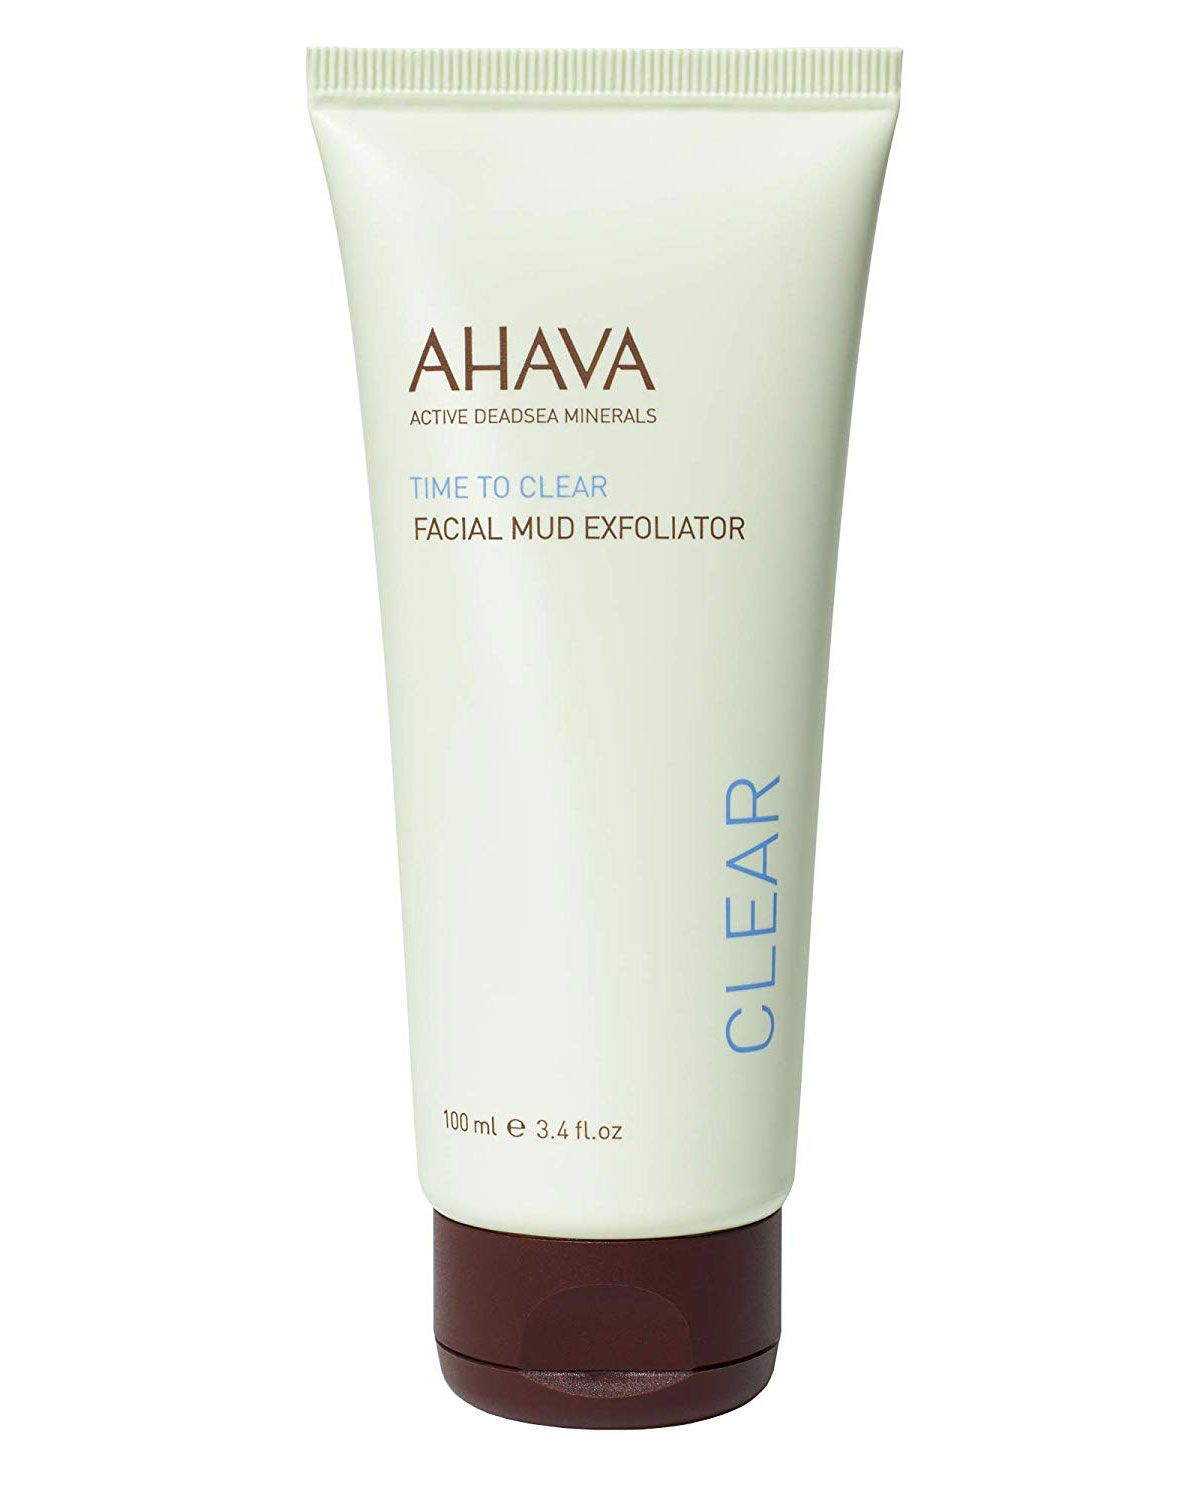 AHAVA Facial Mud Exfoliator